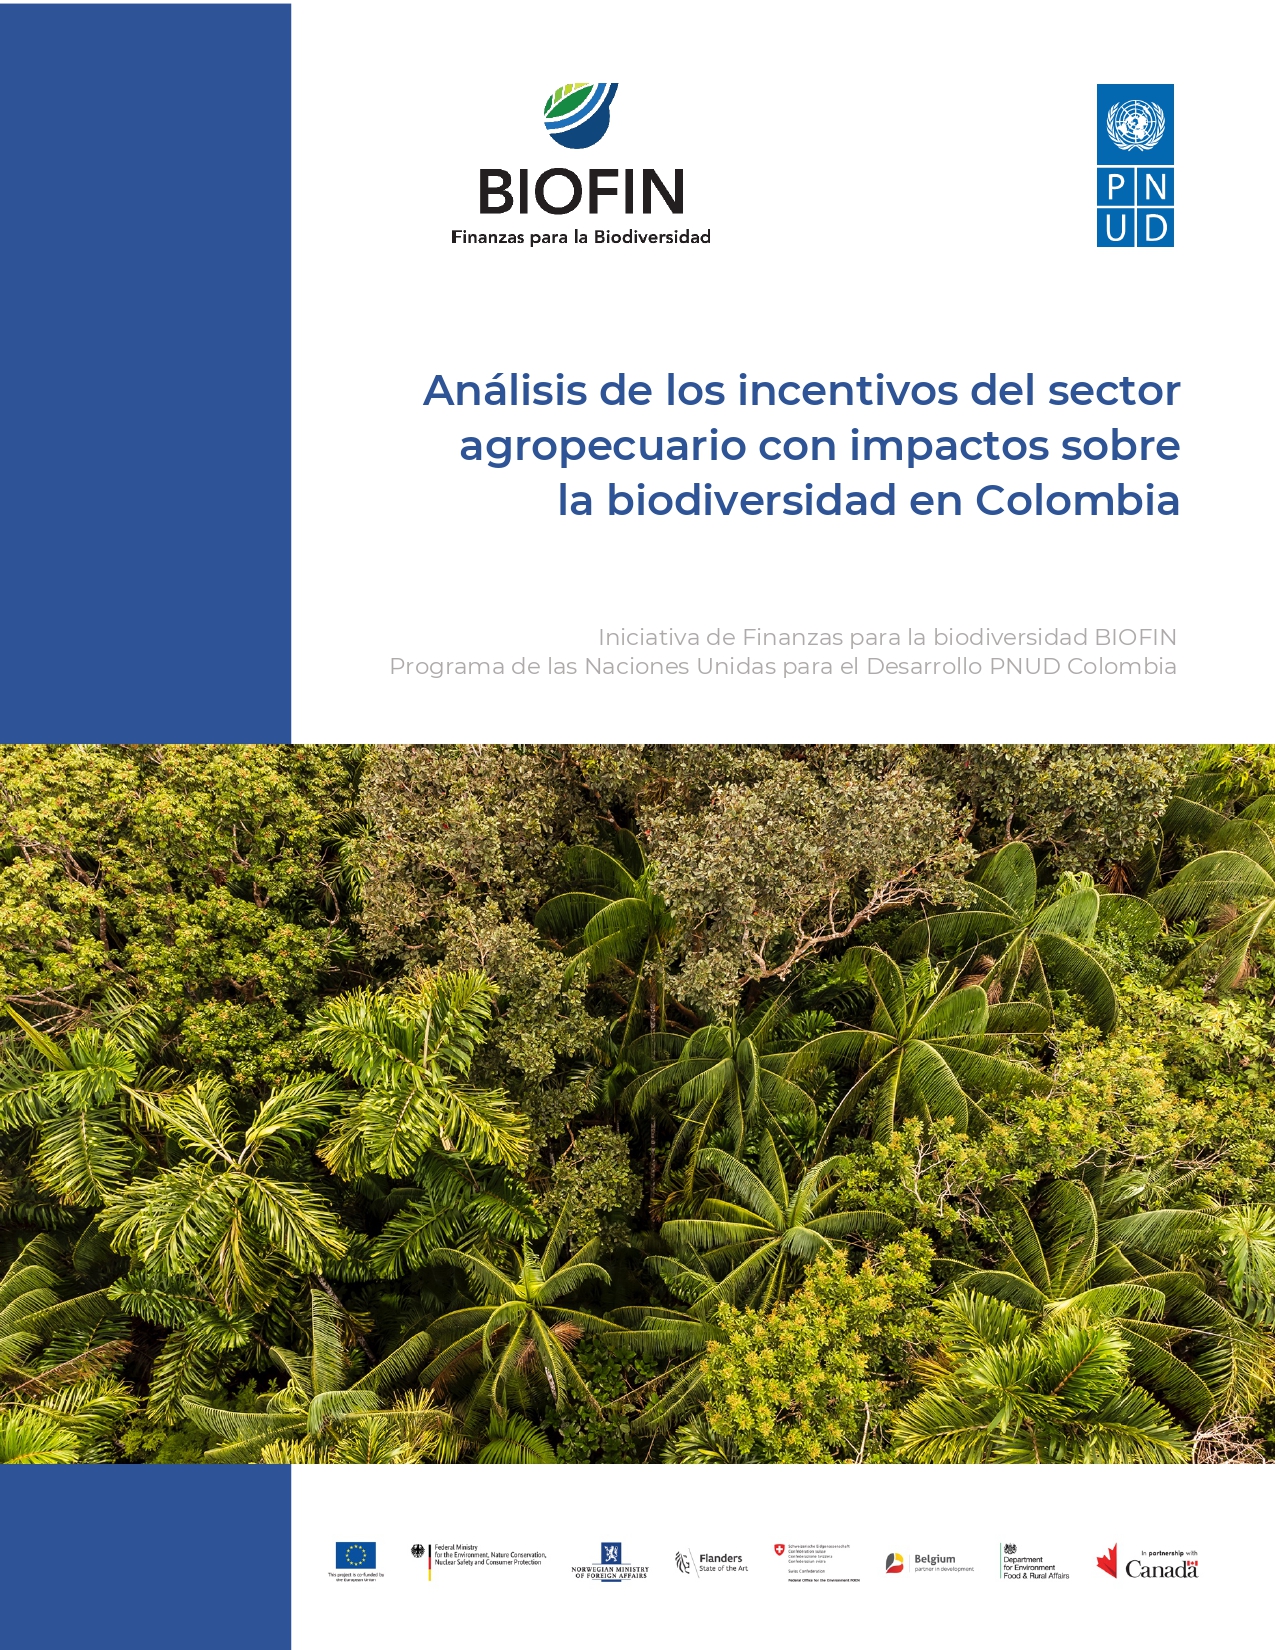 Análisis de incentivos en Colombia - BIOFIN Colombia